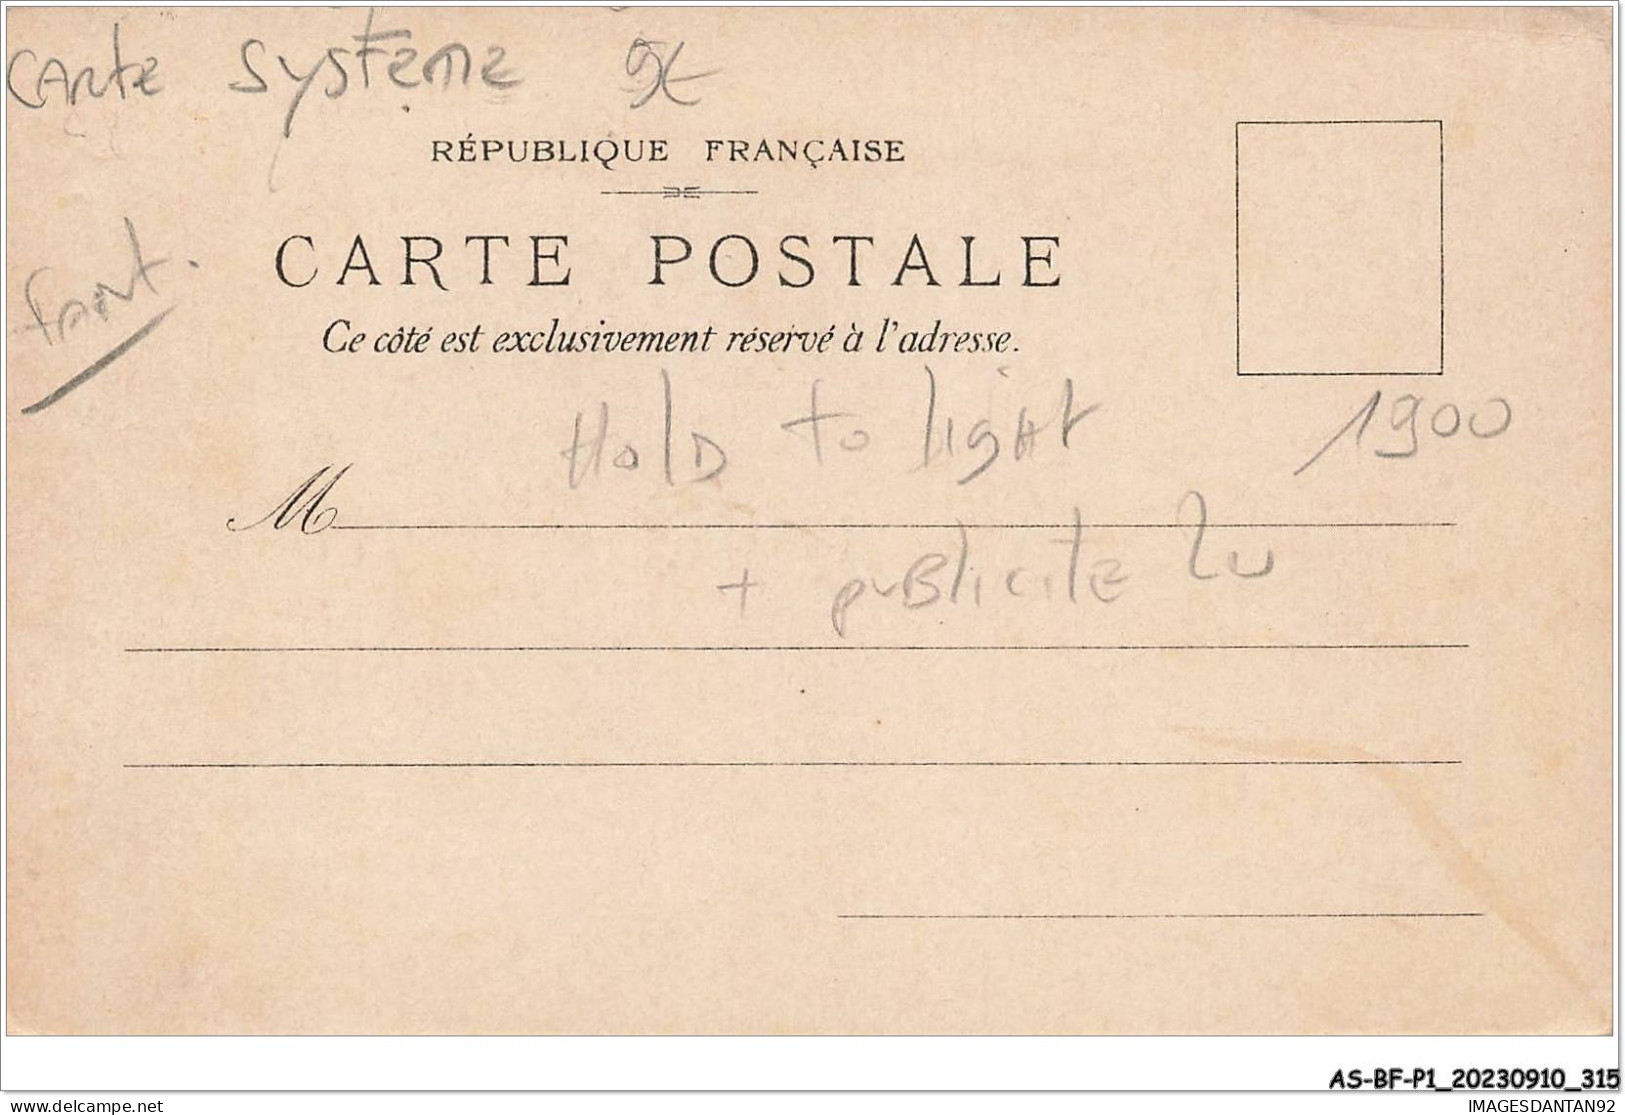 AS#BFP1-0158 - FANTAISIE - Carte à Système Hold To Light - Exposition Lefèvre-utile Paris 1900 - Publicité LU - Mechanical